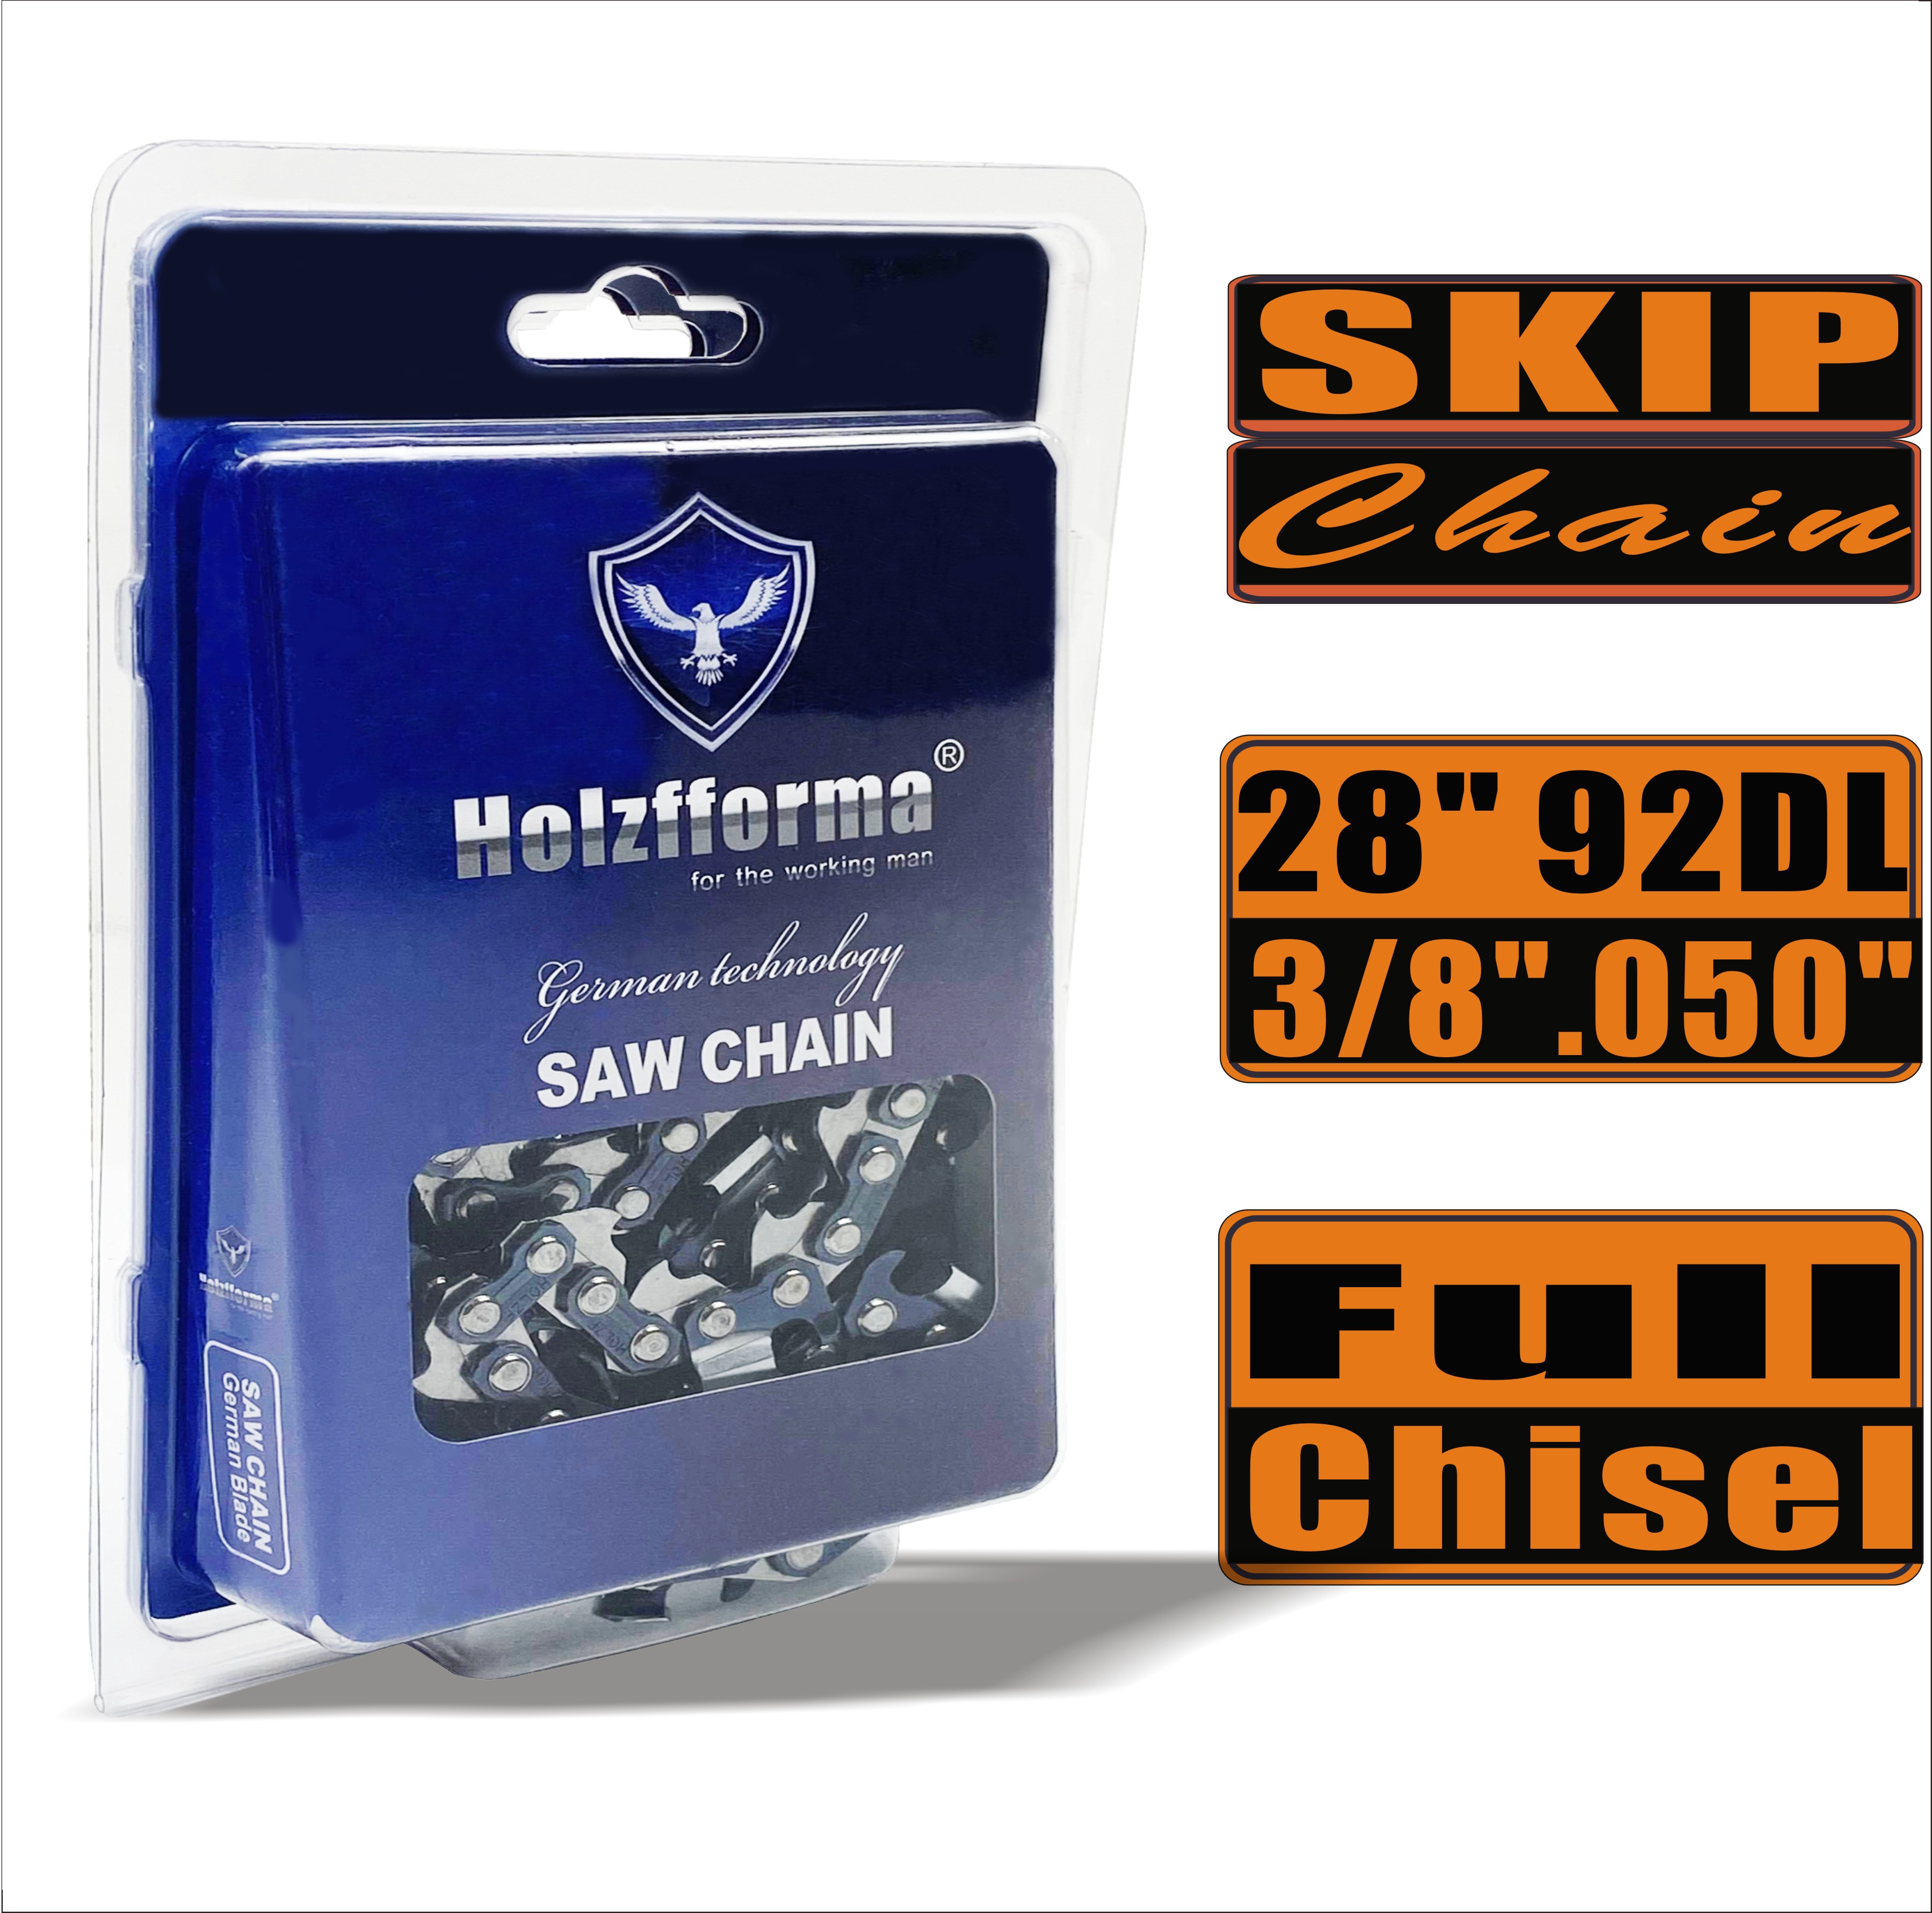 Holzfforma® Skip Chain Full Chisel 3/8'' 0,050'' 28 дюймов 92DL цепи для Бензопилы Высококачественные немецкие лезвия и звенья